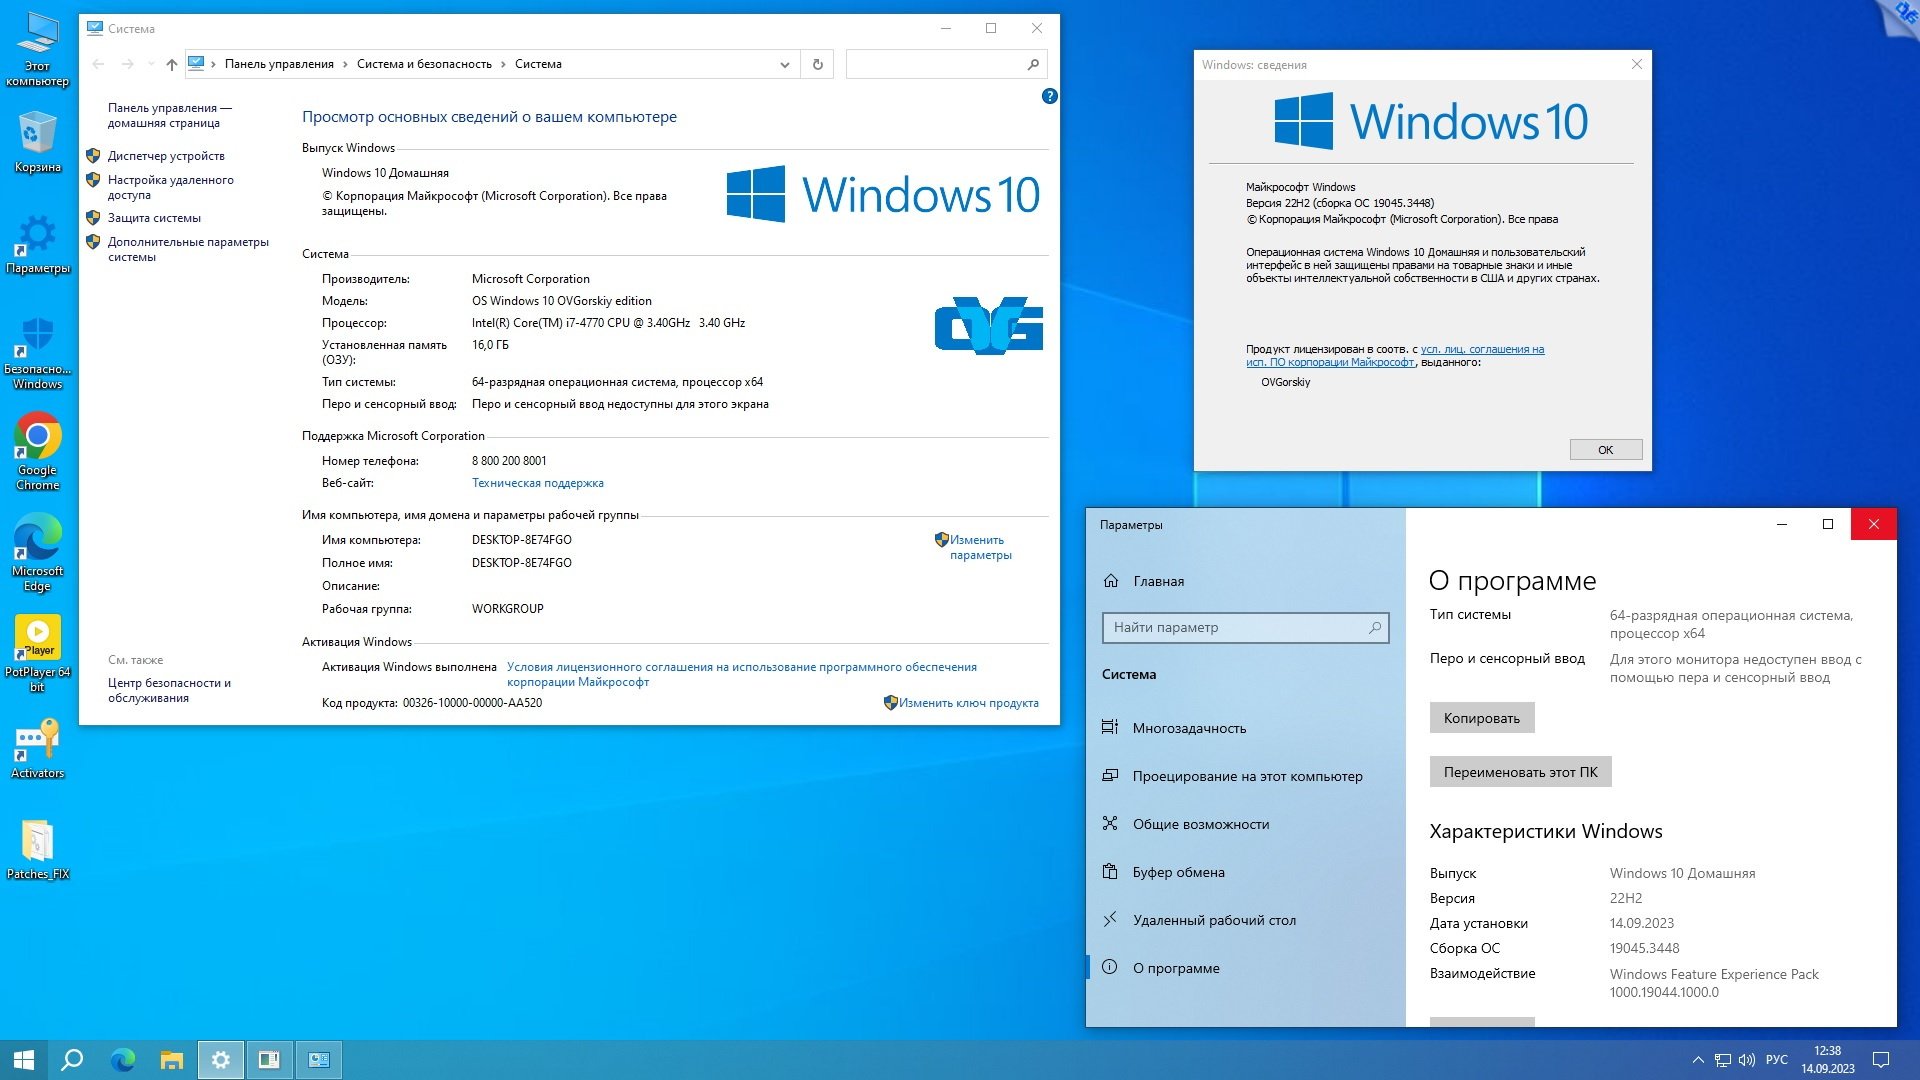 Windows 10 home 22h2 64 bit. Windows 10 Pro компьютер. Windows 10 OVGORSKIY Edition. Как узнать сборку виндовс 10 на своем компьютере. Quick assist Windows 10 на русском.